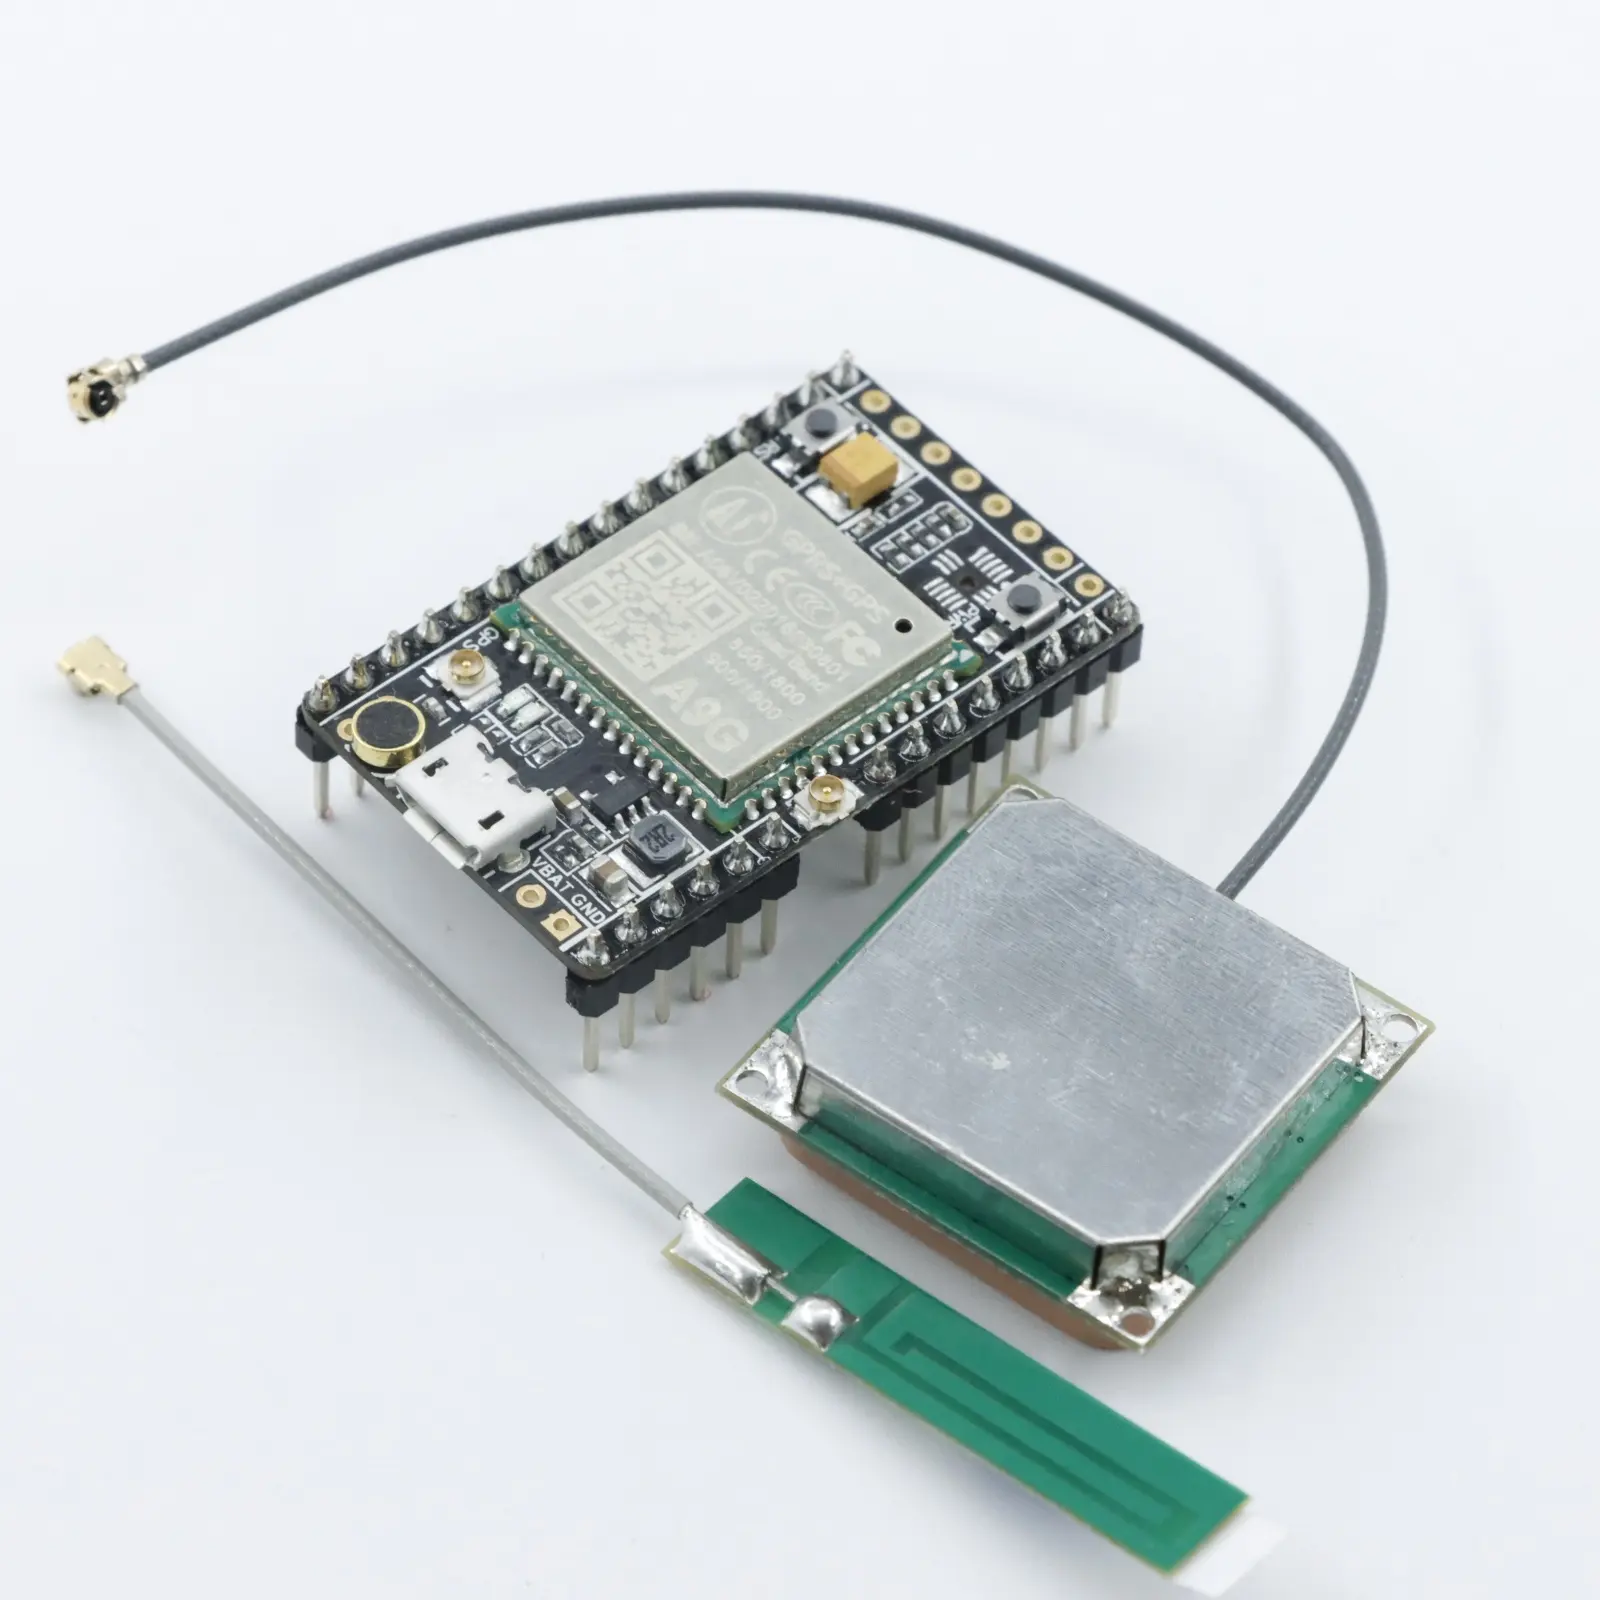 GPRS GPS GSM การส่งข้อมูลเสียงไร้สายตําแหน่งตําแหน่ง A9 โมดูลบอร์ดพัฒนา A9G โมดูลบอร์ดพัฒนา A9G